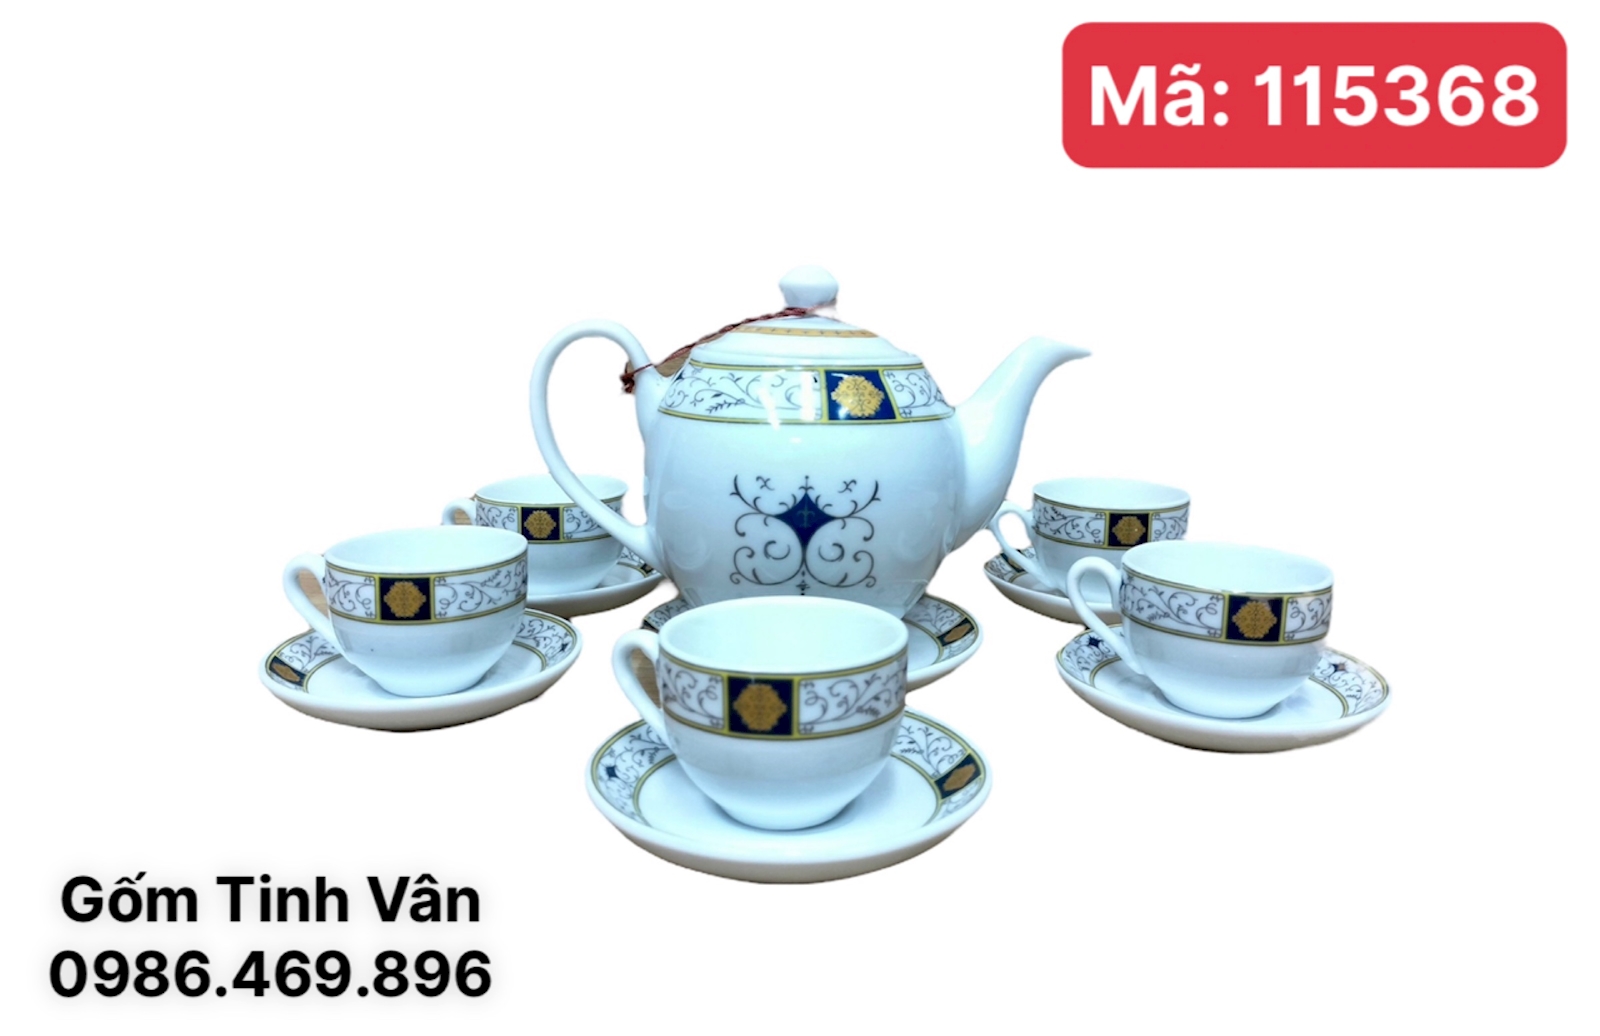 Bộ bình trà, mã 115368, men trắng,viền hoa văn, 600ml, Bát Tràng tinh vân